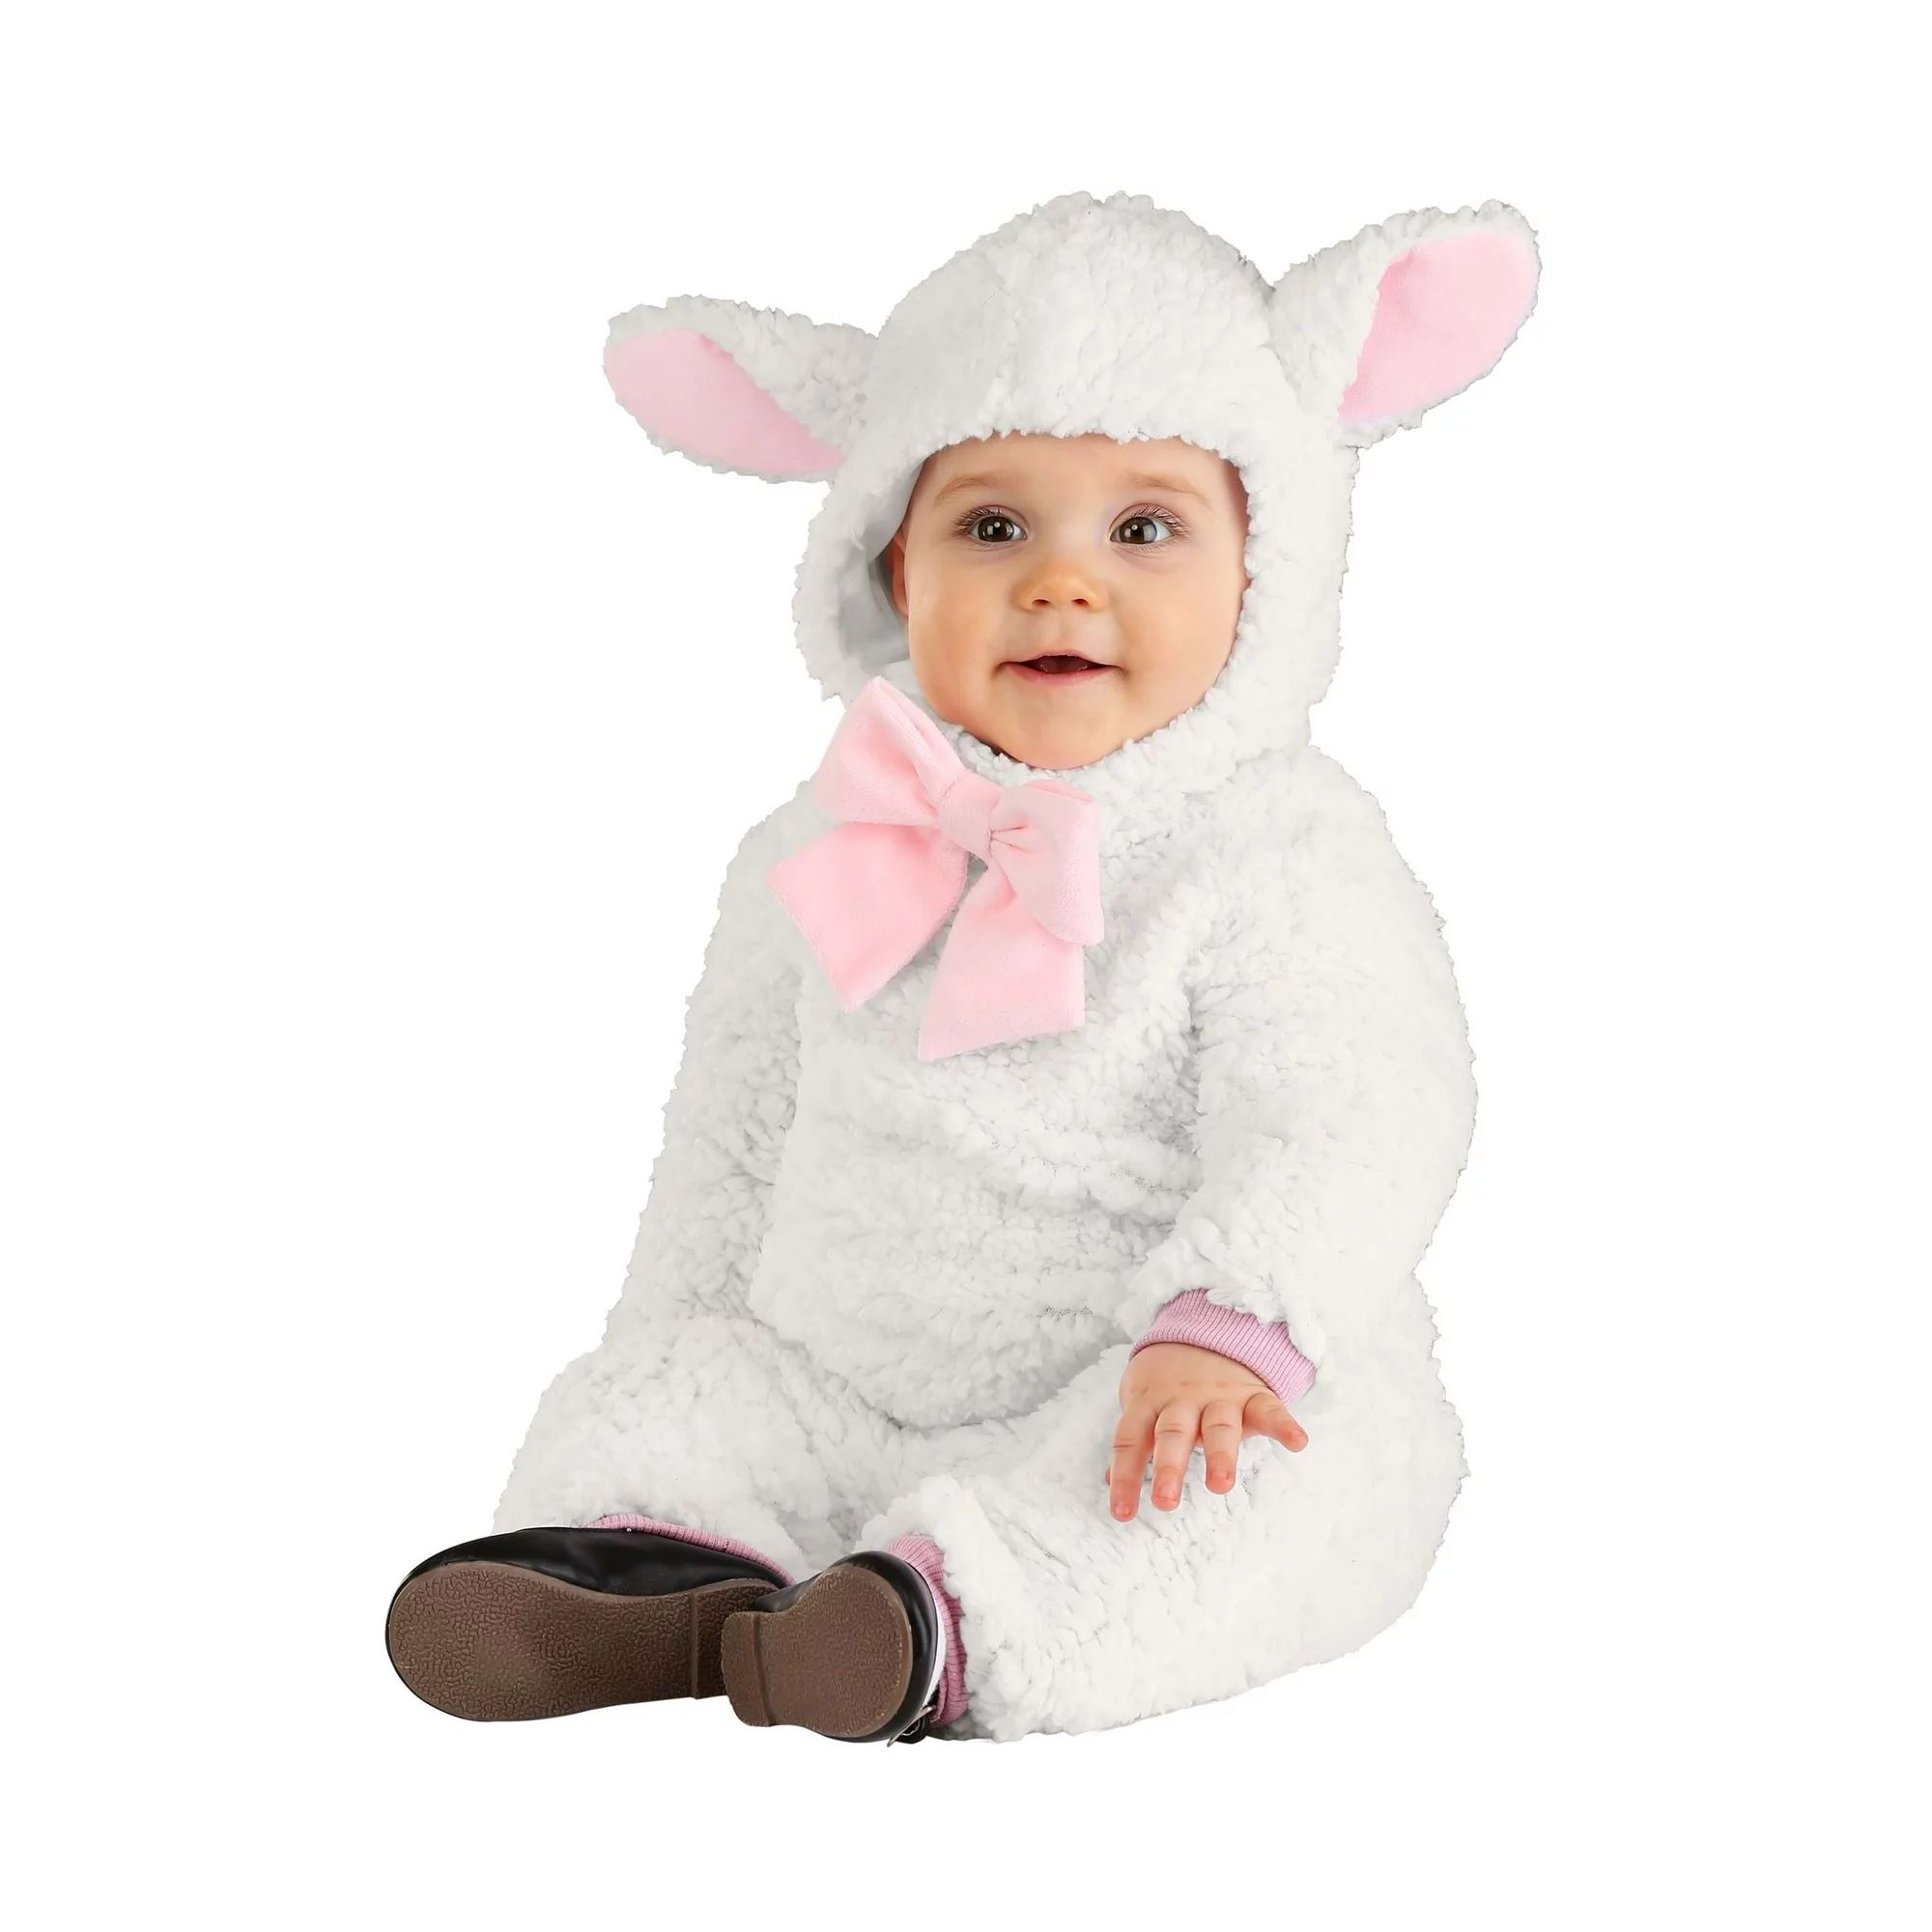 Little Lamb Costume for Infants - Walmart.com | Walmart (US)